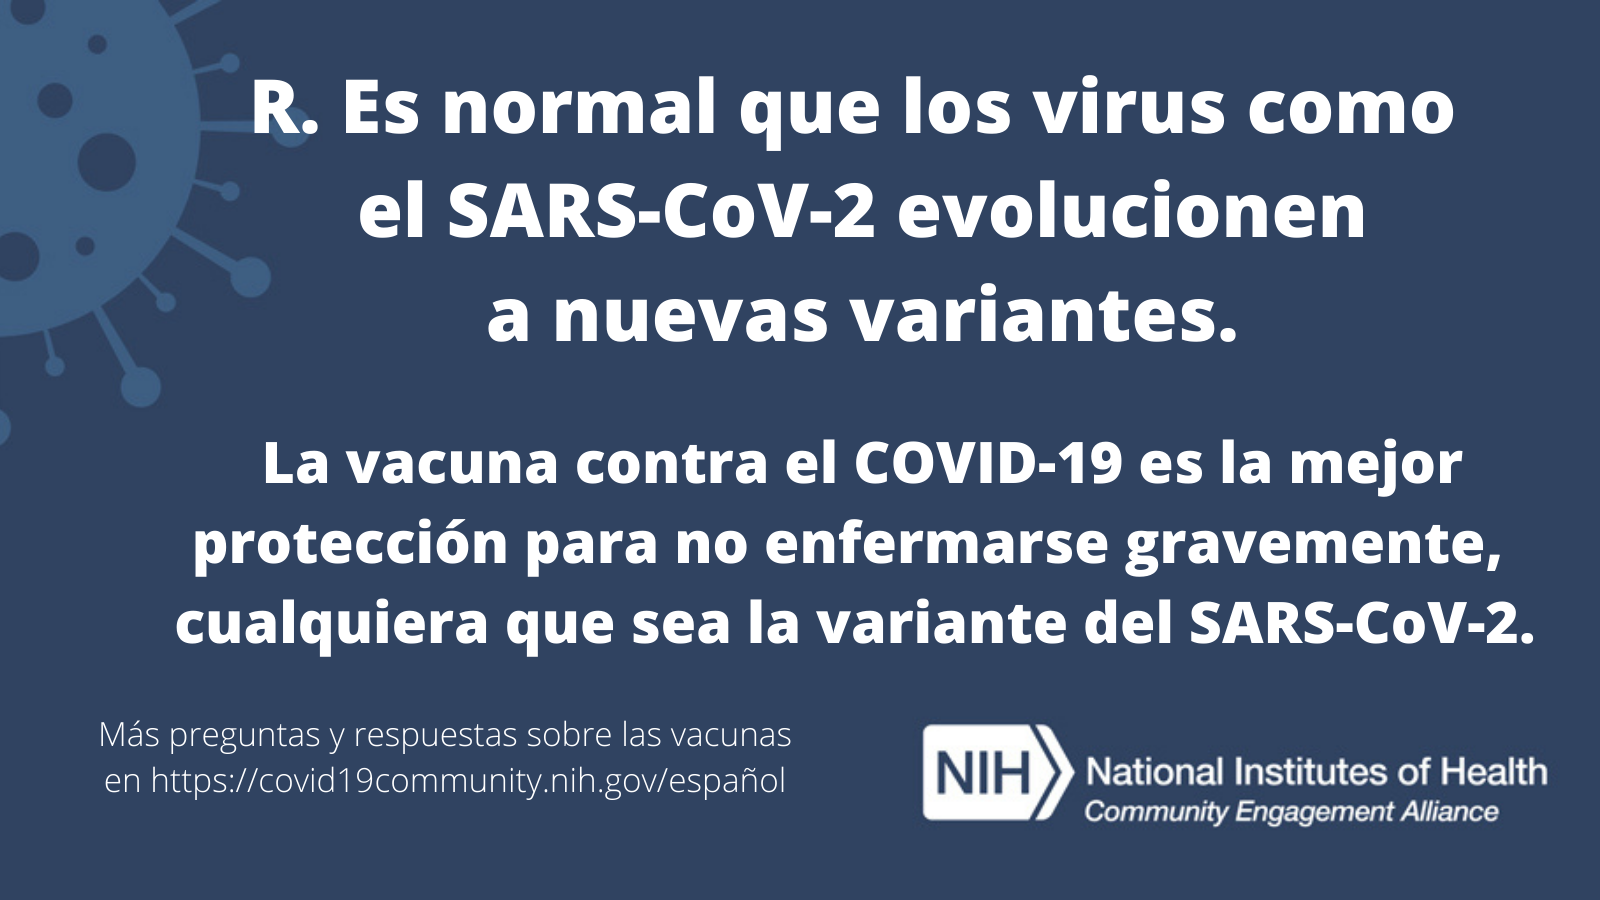 R. Es normal que los virus como el SARS-CoV-2 evolucionen a nuevas variantes.  La vacuna contra el COVID-19 es la mejor protección para no enfermarse gravemente, cualquiera que sea la variante del SARS-CoV-2. Más preguntas y respuestas sobre las vacunas en covid19community.nih.gov/español.